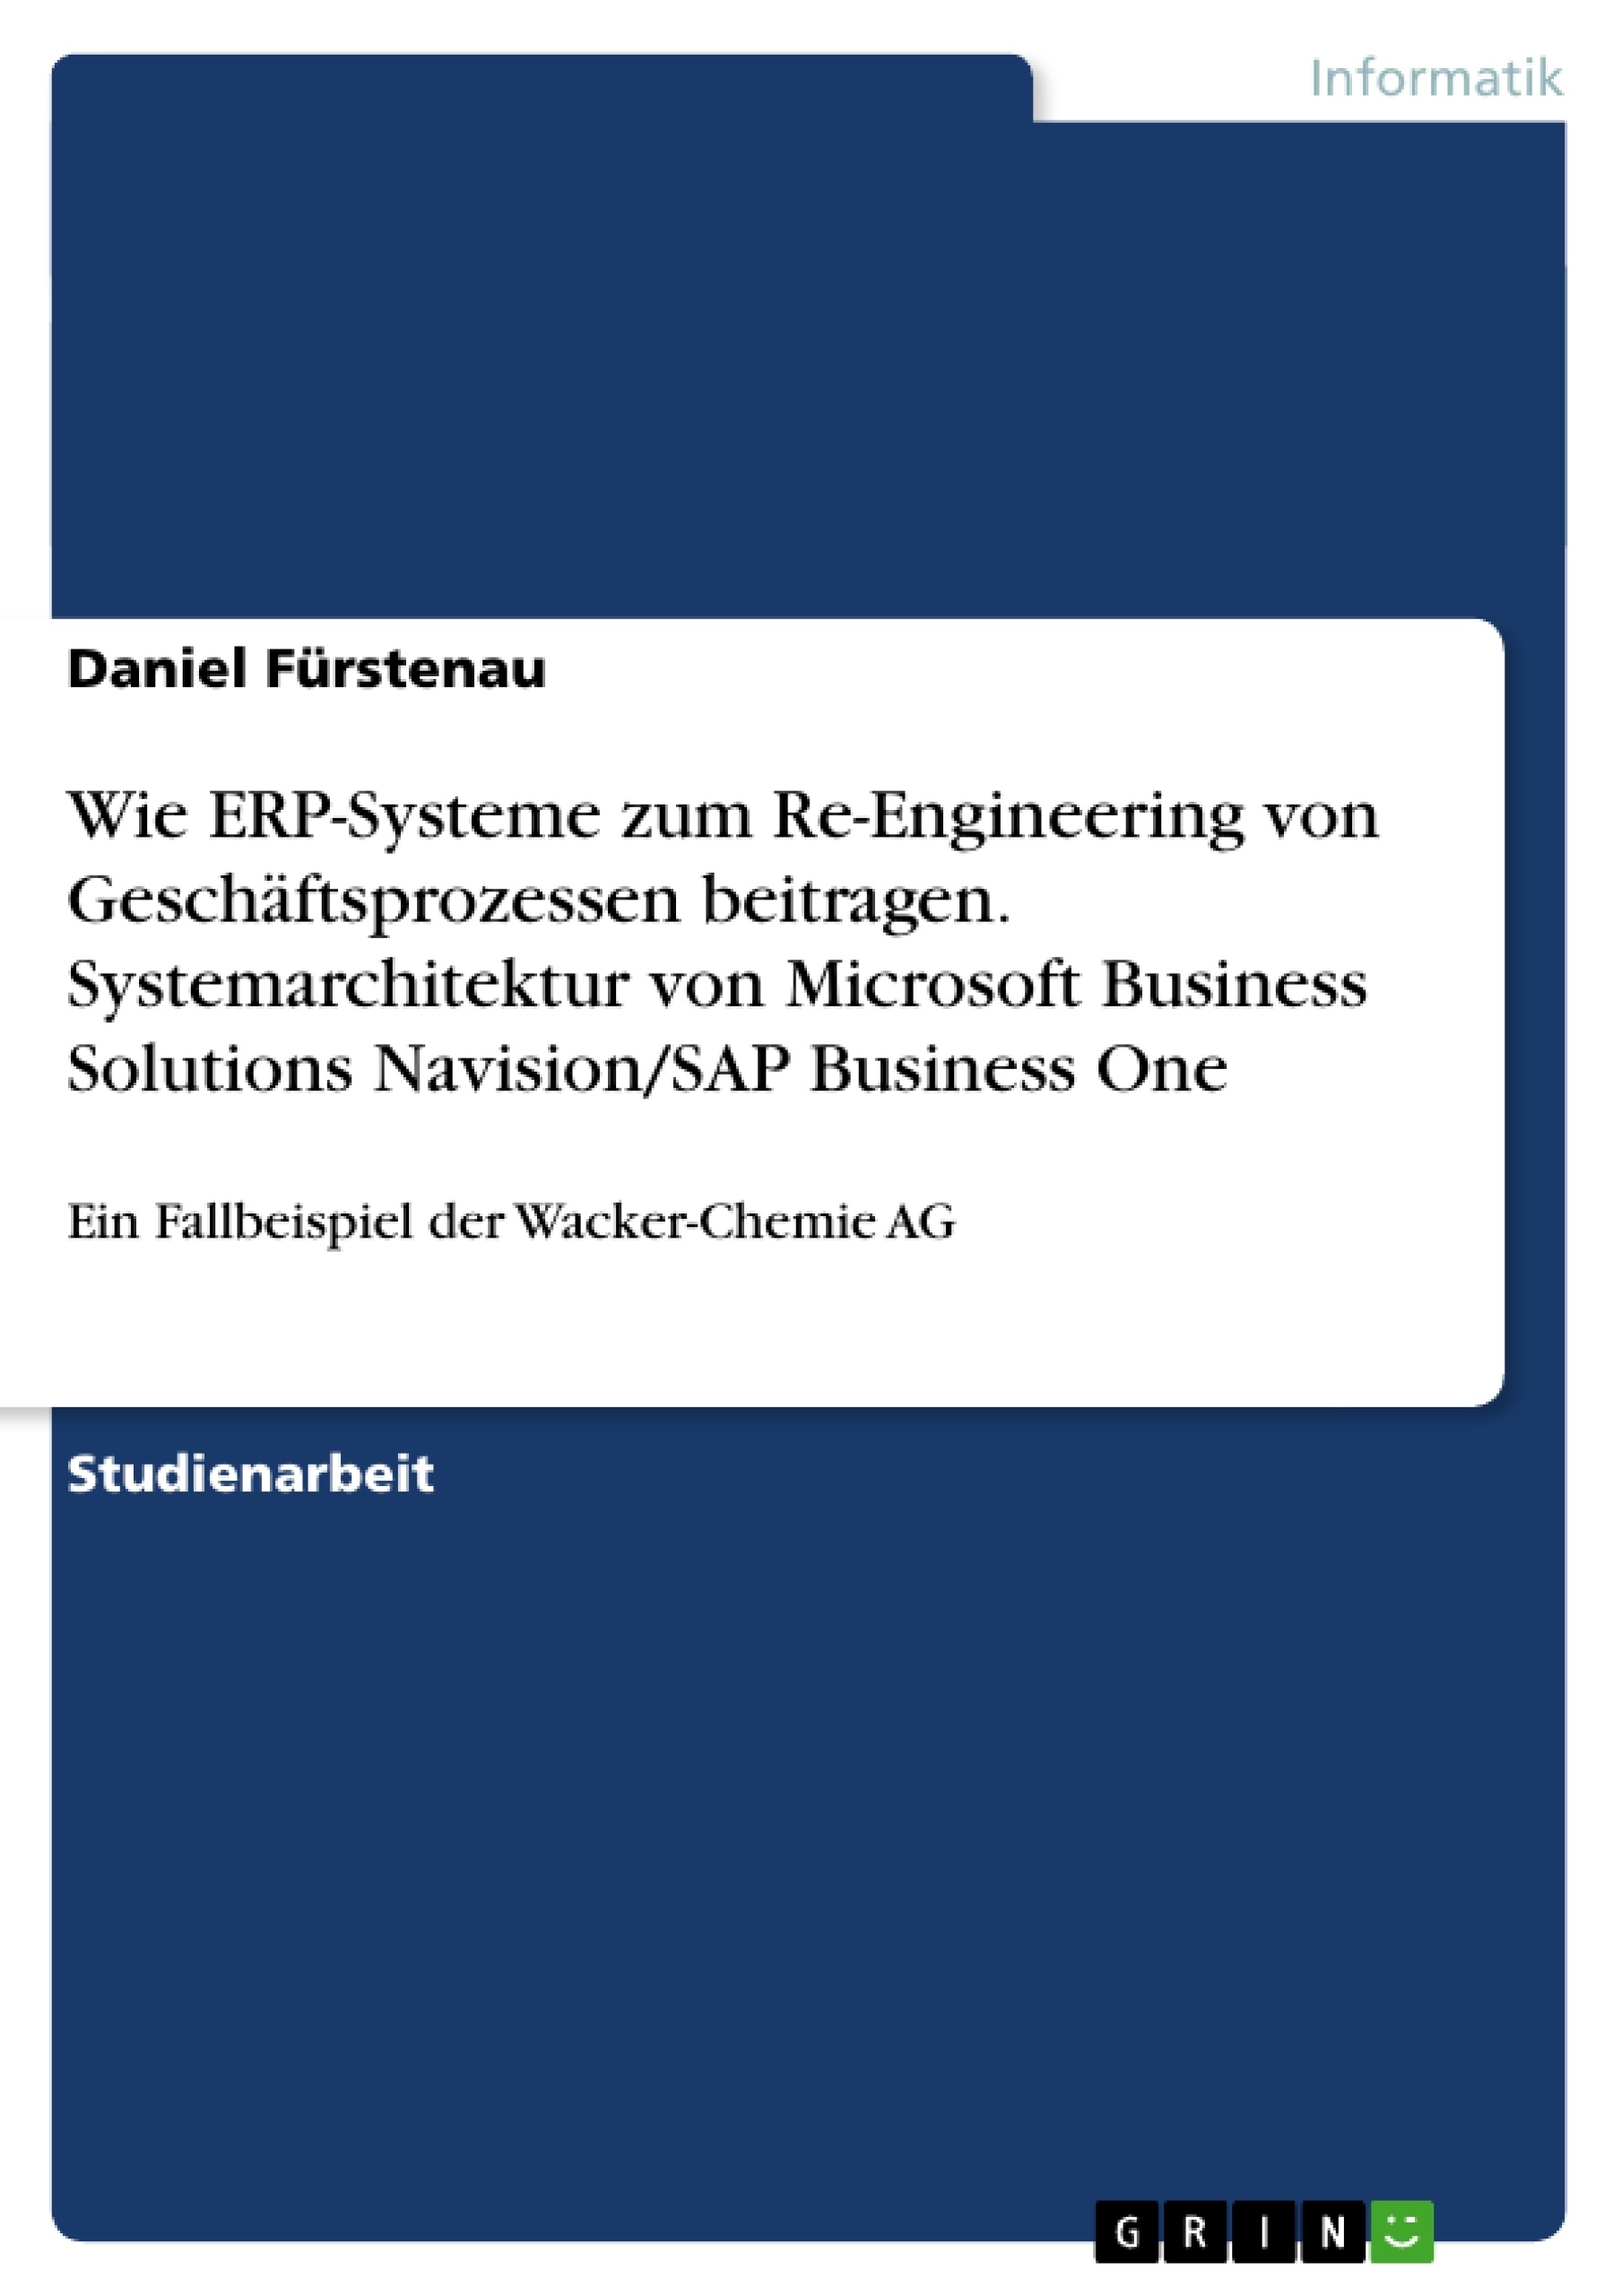 Titel: Wie ERP-Systeme zum Re-Engineering von Geschäftsprozessen beitragen.
Systemarchitektur von Microsoft Business Solutions Navision/SAP Business One